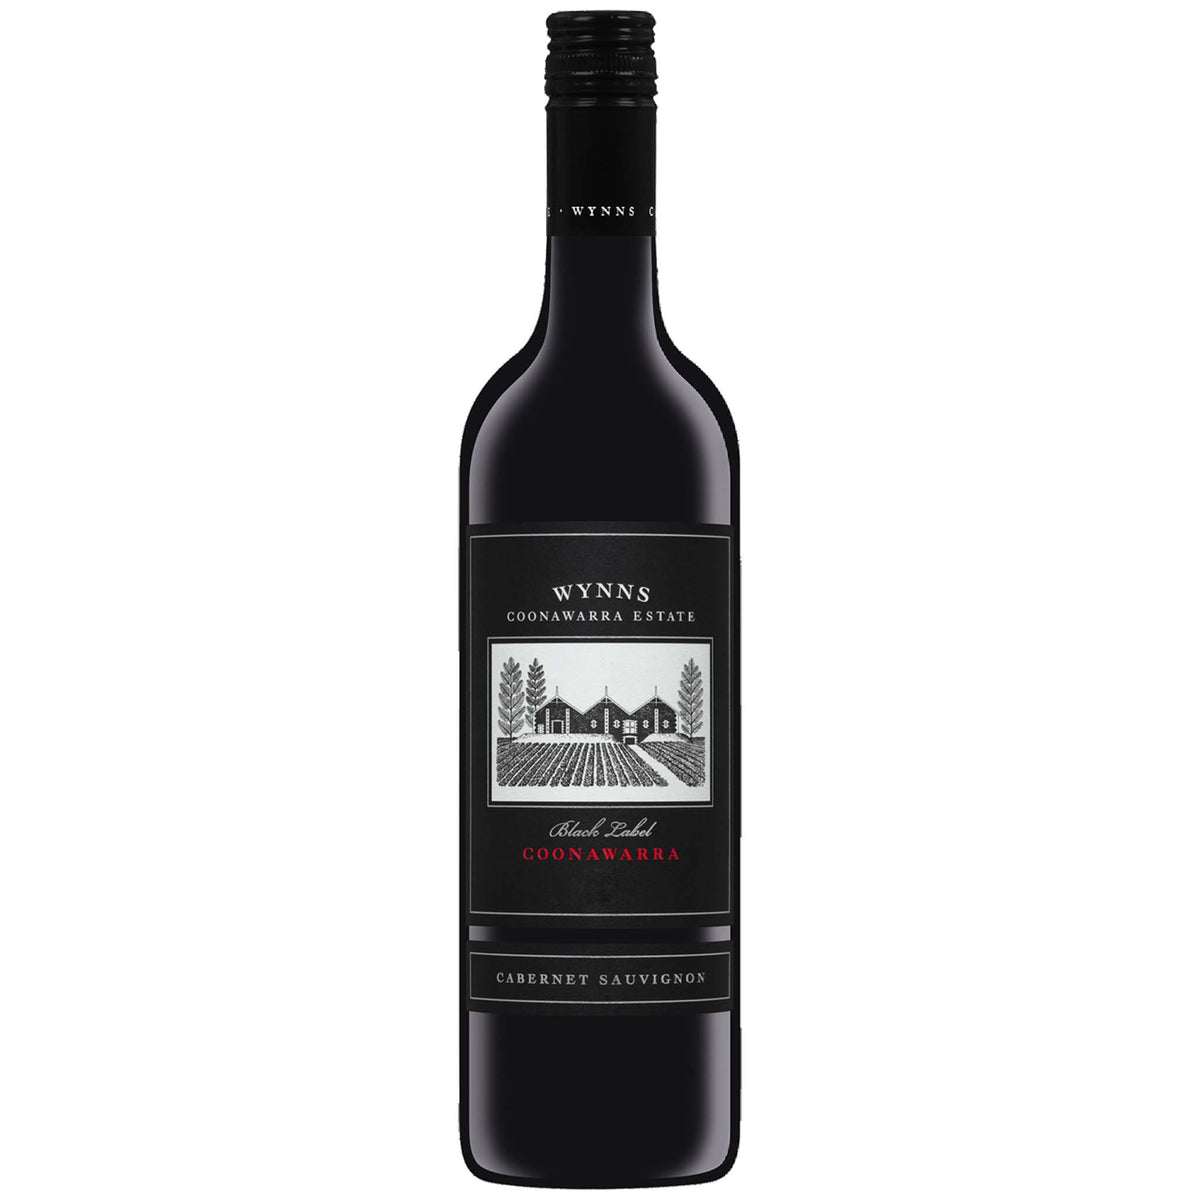 Wynns-Coonawarra-Black-Label-Cabernet-Sauvignon-2010